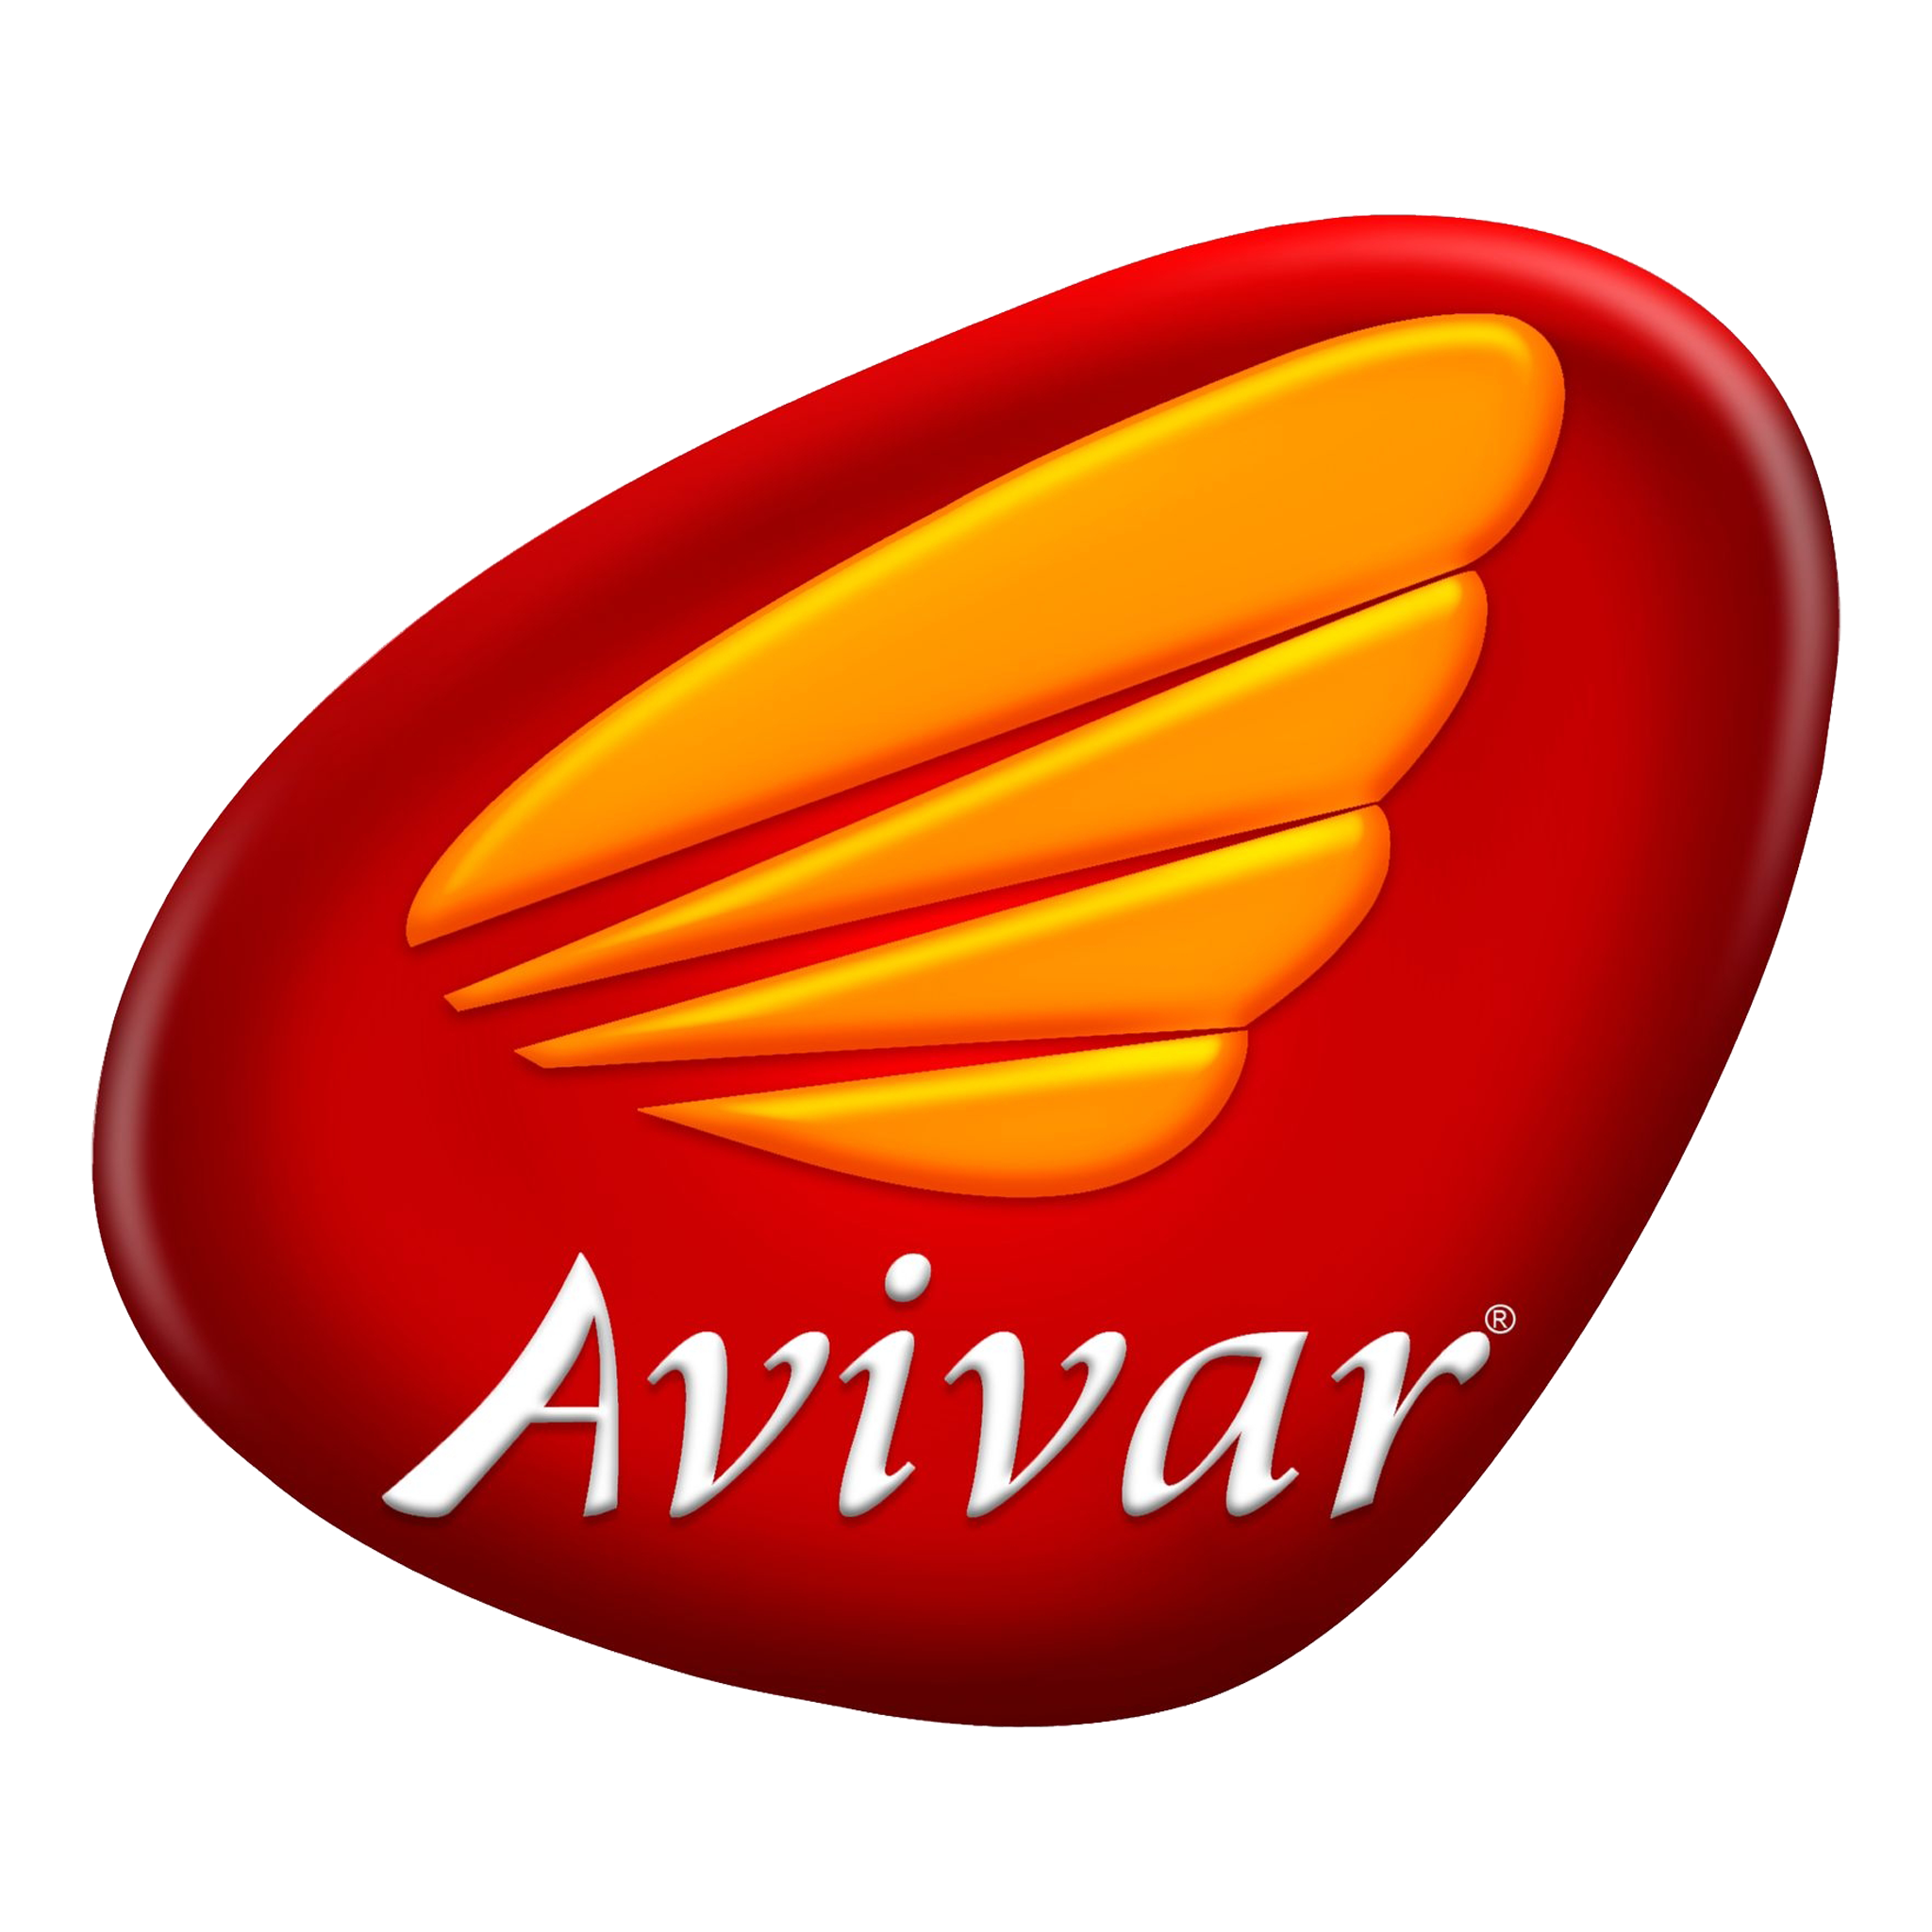 Avivar Logo